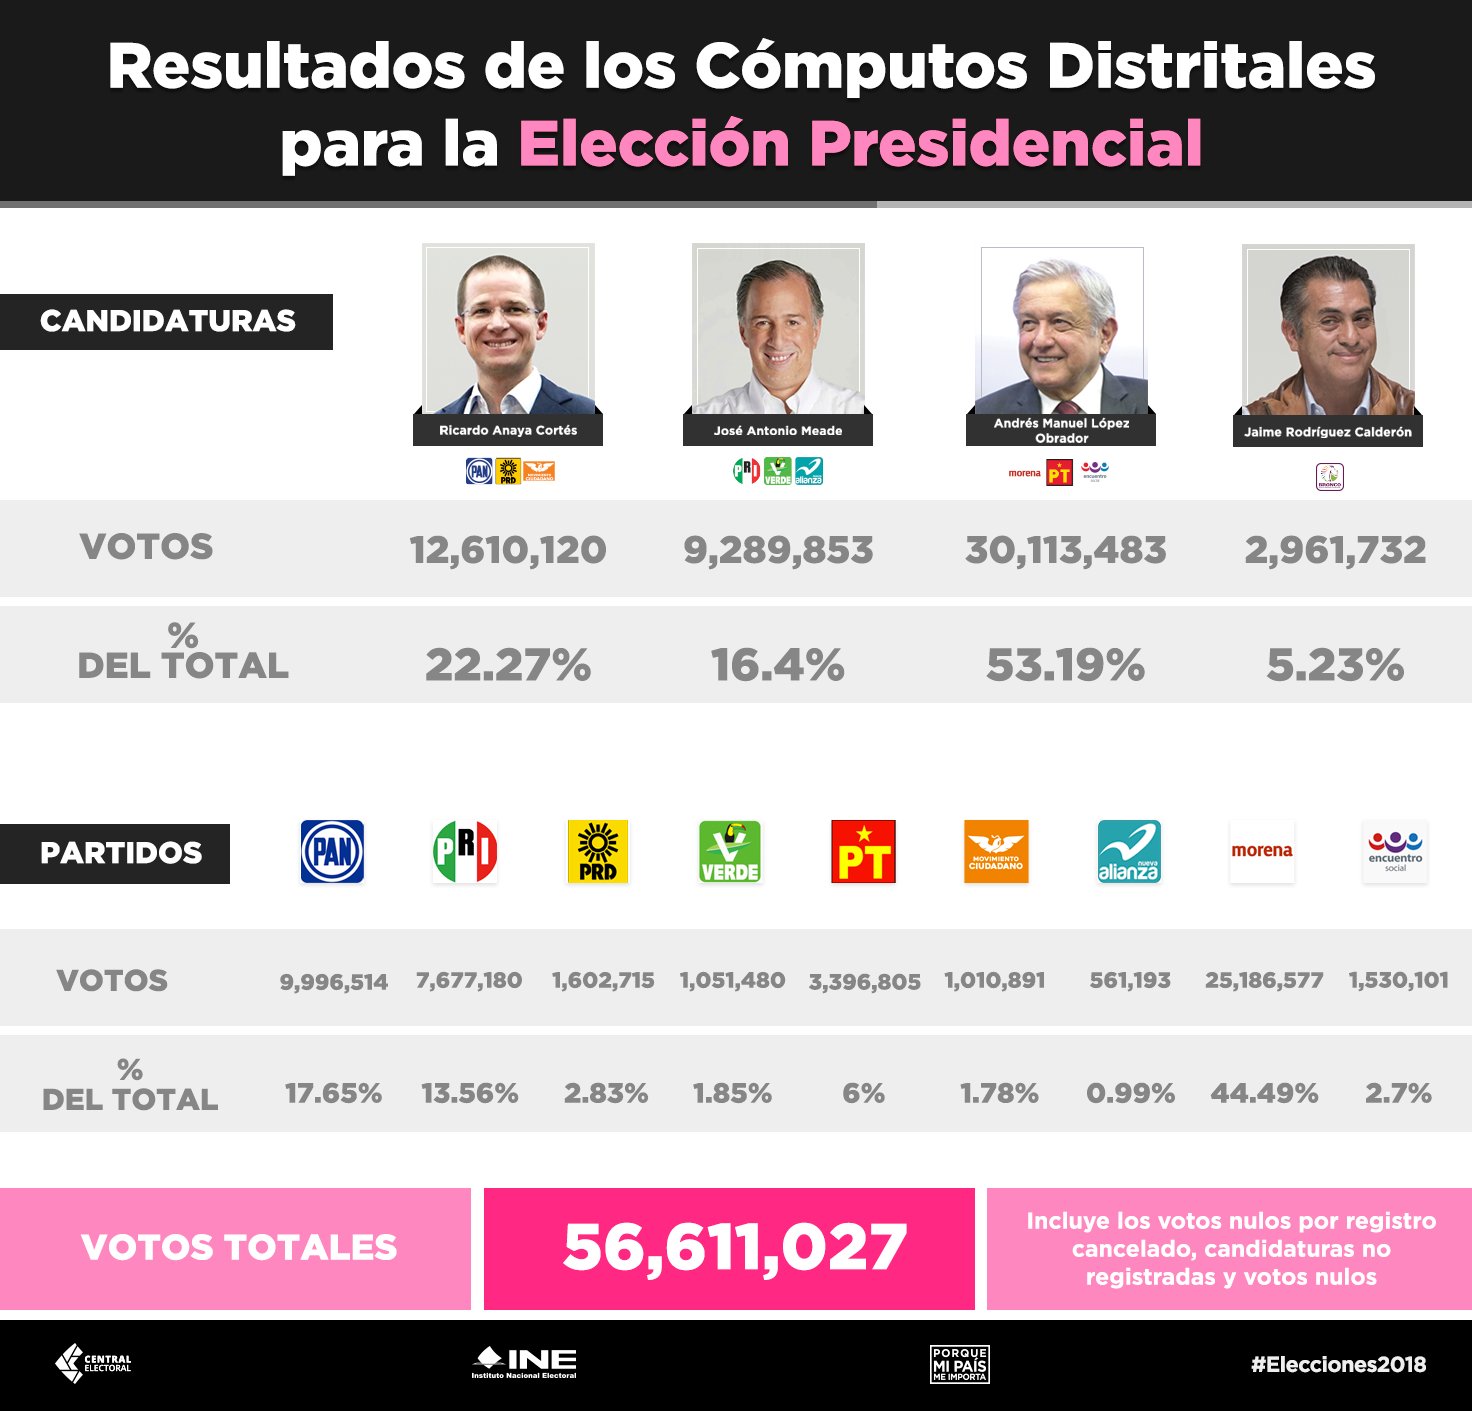 INEMexico on Twitter: "📊 Conoce los resultados finales de los Cómputos  Distritales para la #Presidencia de las #Elecciones2018  <a href=